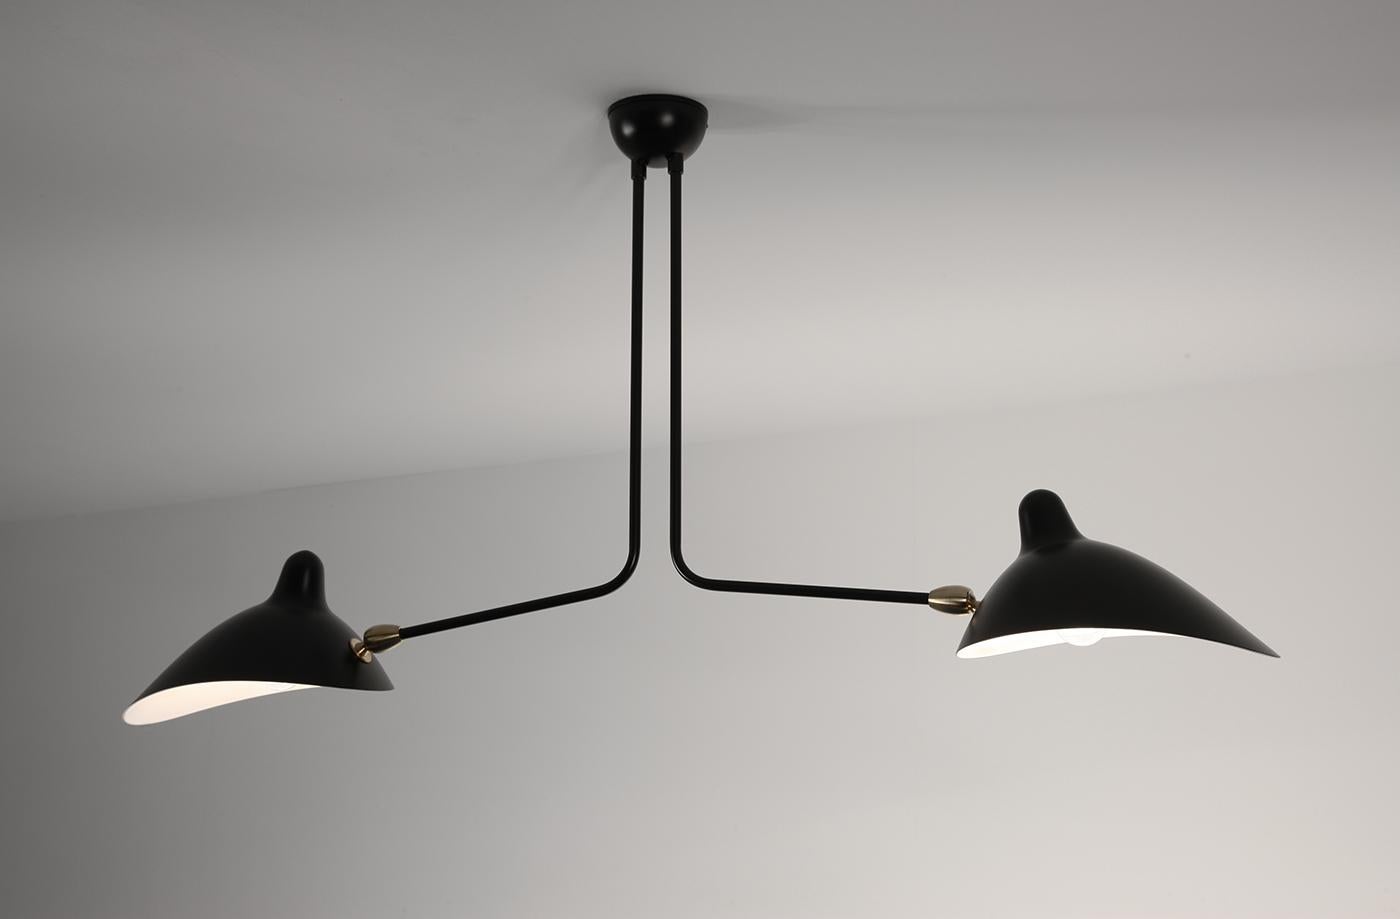 Deckenleuchte Modell 'Two fixed arms Ceiling Lamp', entworfen von Serge Mouille im Jahr 1959.

Hergestellt von Editions Serge Mouille in Frankreich. Die Herstellung der Lampen, Wandleuchten und Stehlampen erfolgt in handwerklicher Weise mit den